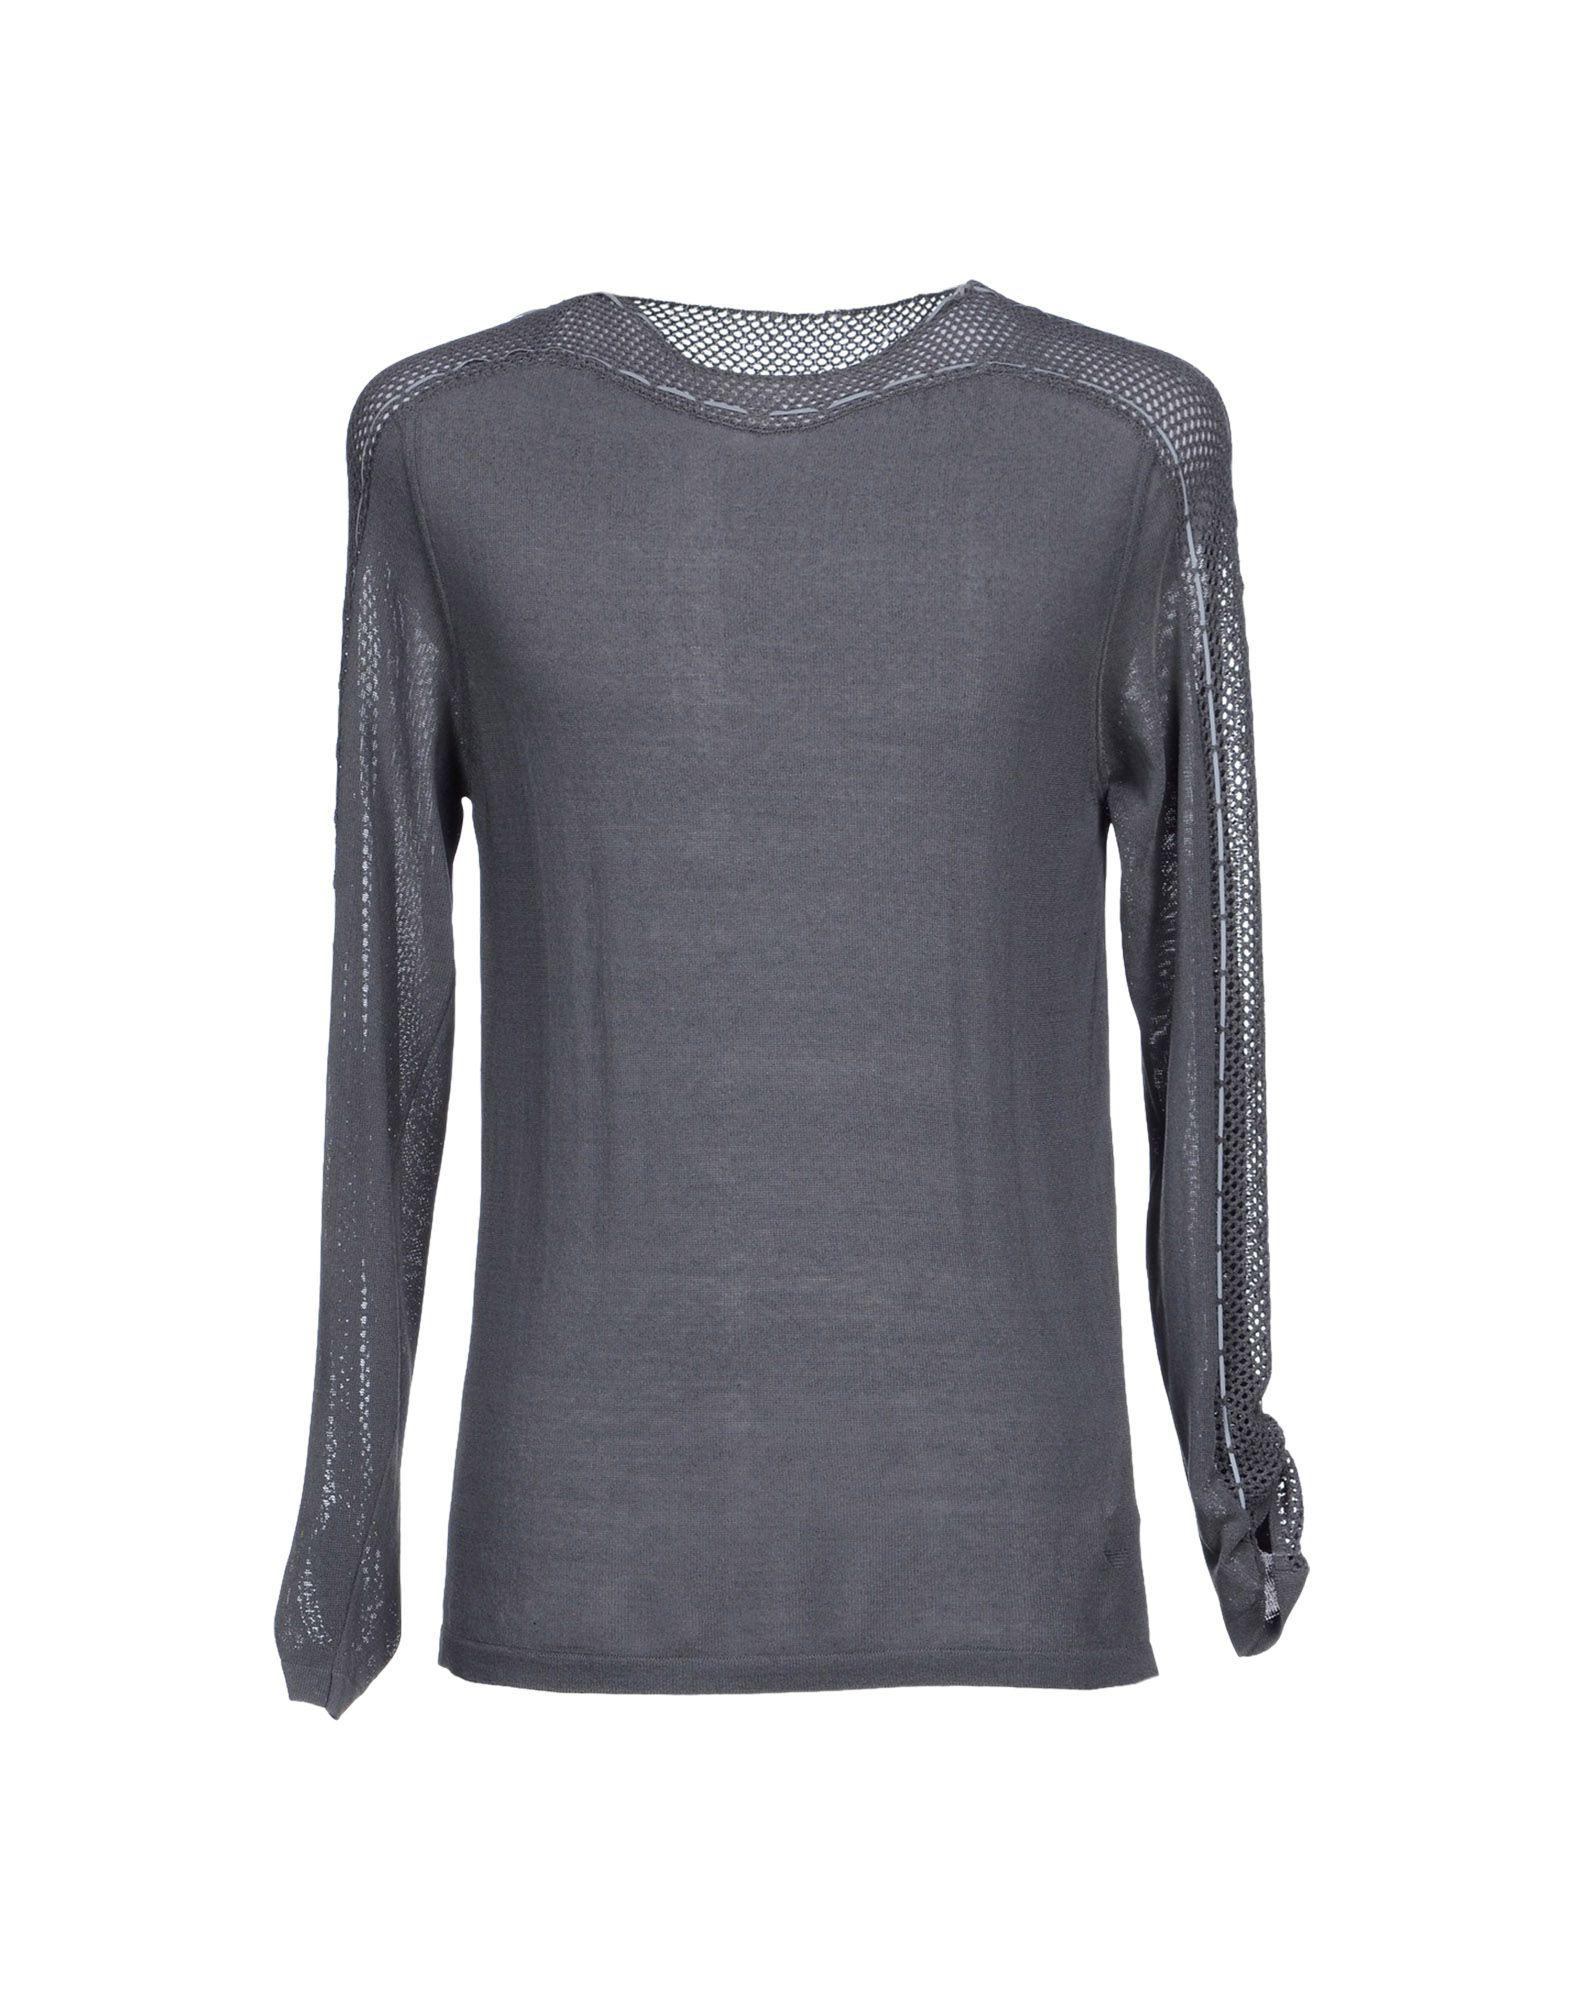 Lyst - Emporio Armani Sweater in Gray for Men